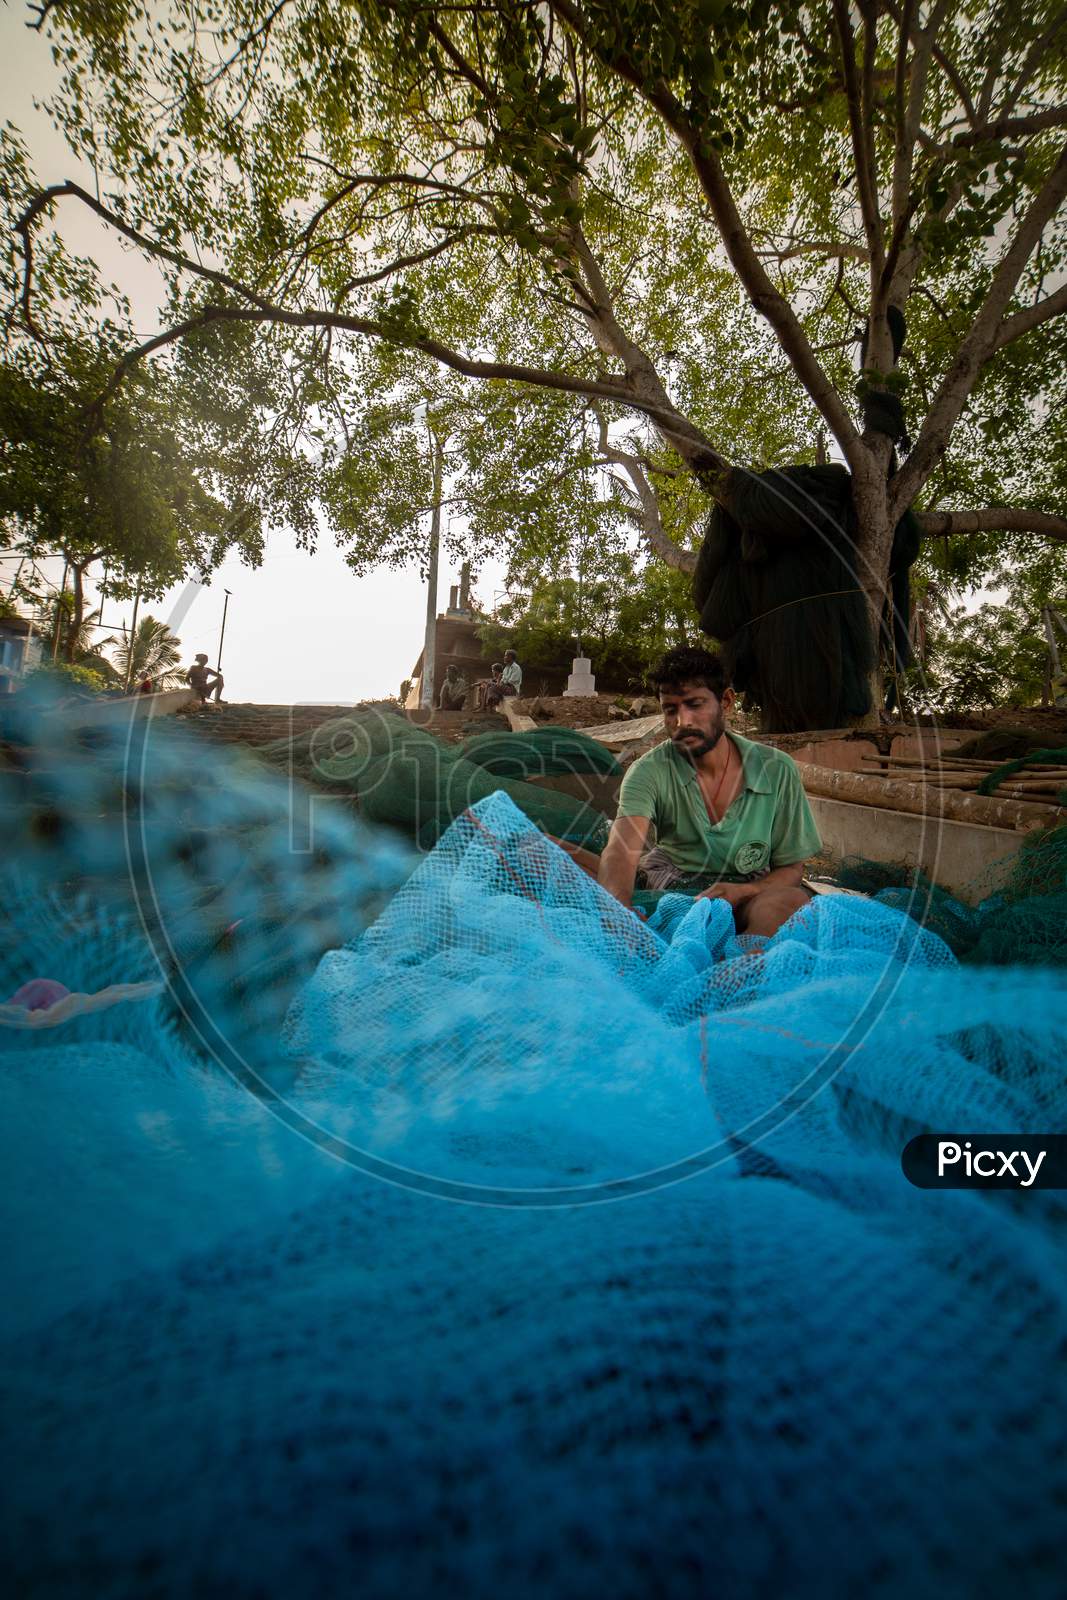 Indian fisherman weaving cast net